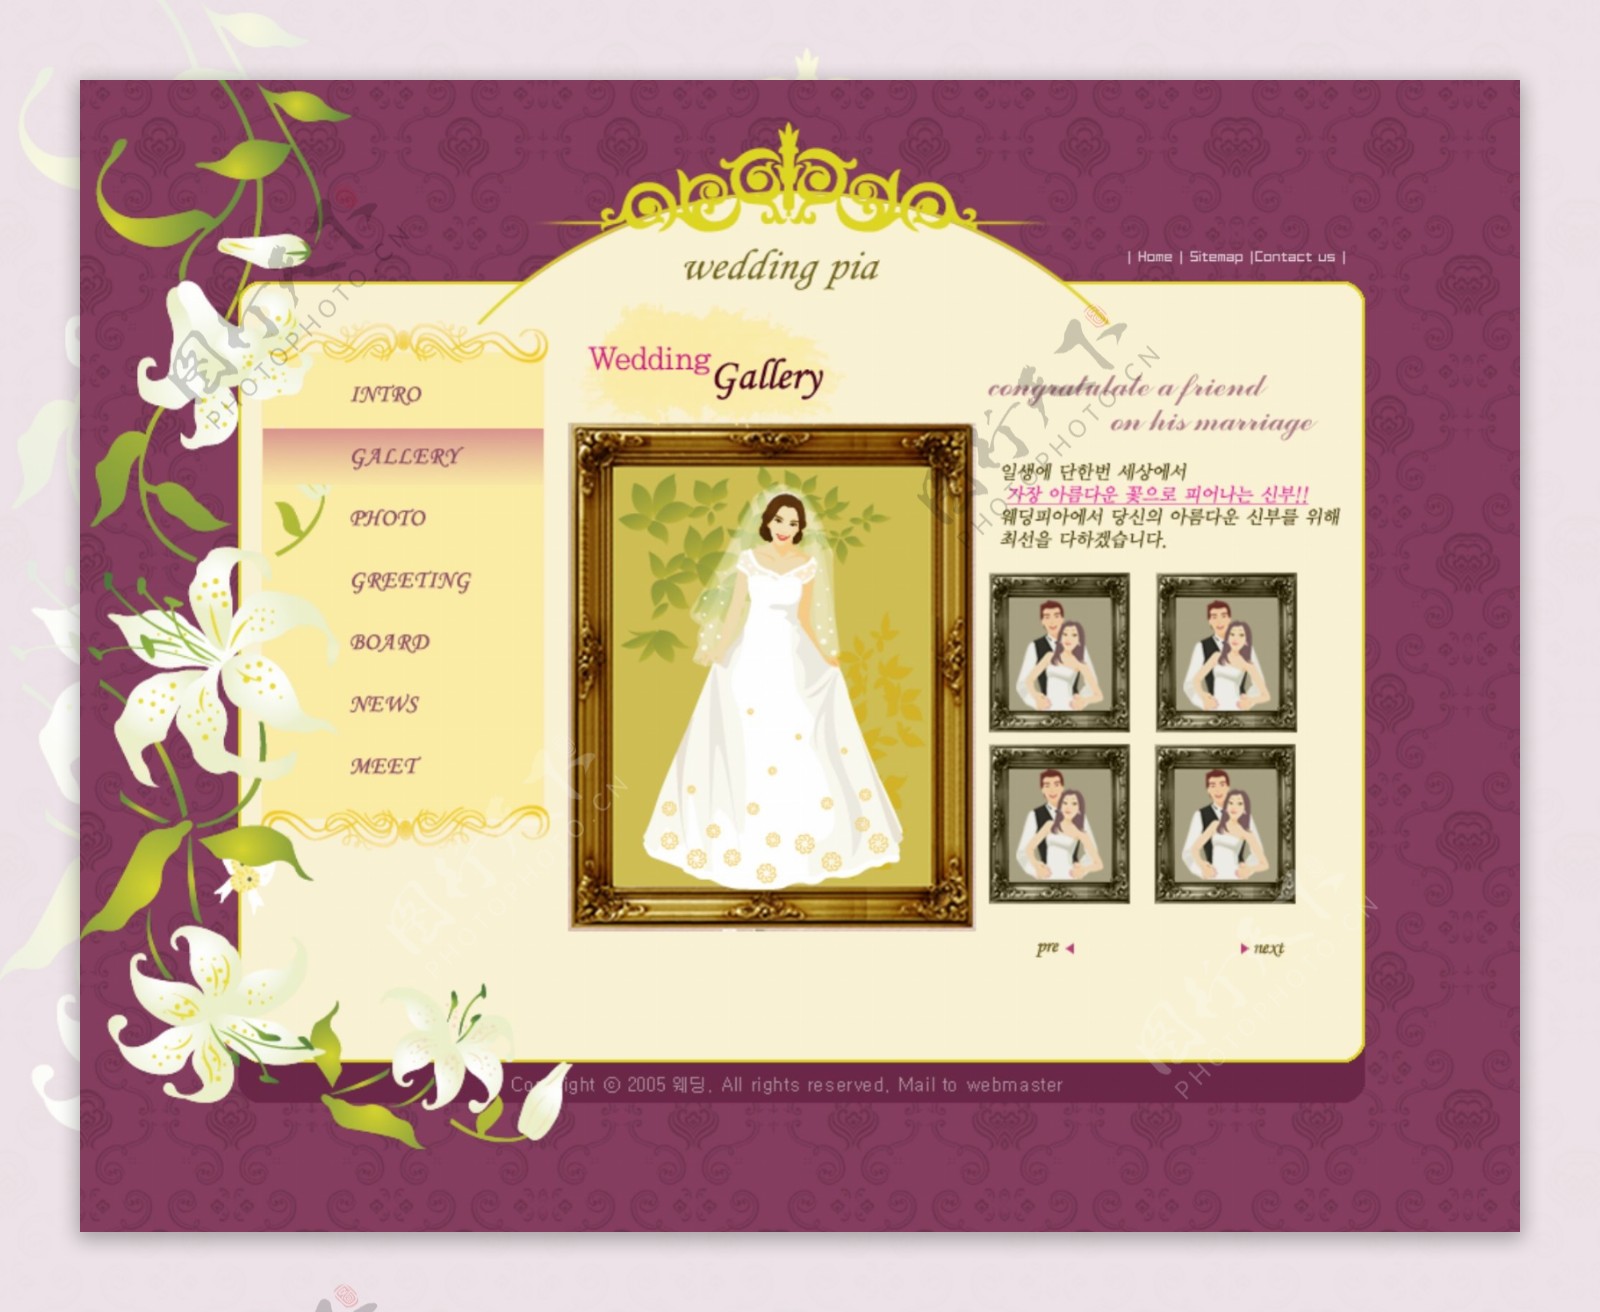 婚纱展示紫色网站模板